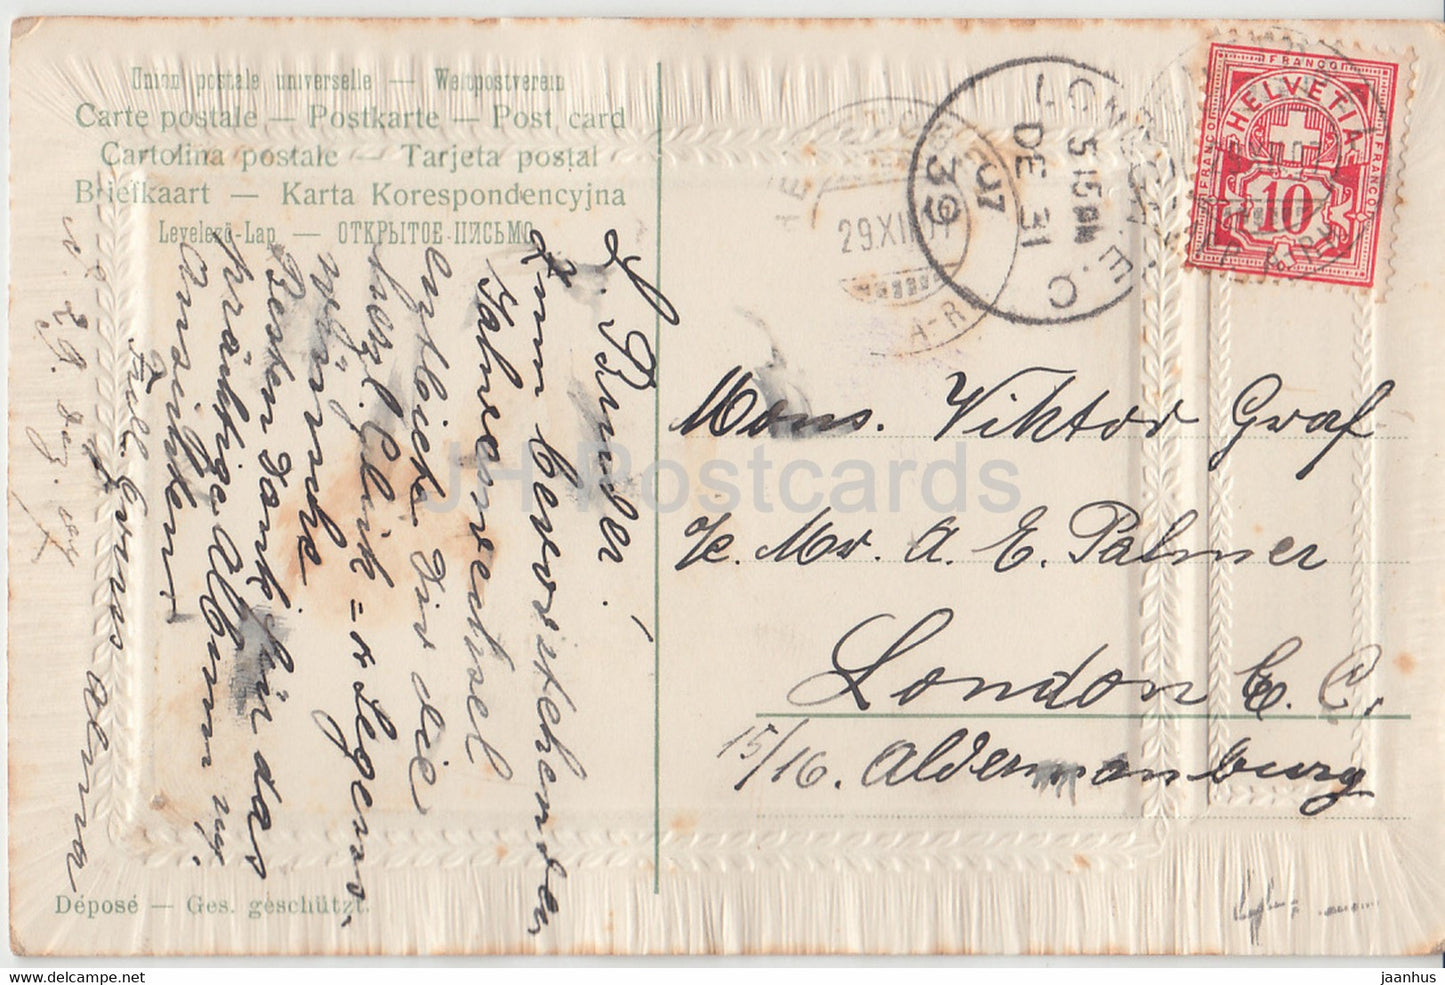 New Year Greeting Card - Herzlichen Gluckwunsch zum Neuen Jahre - children - old postcard - 1907 - Germany - used